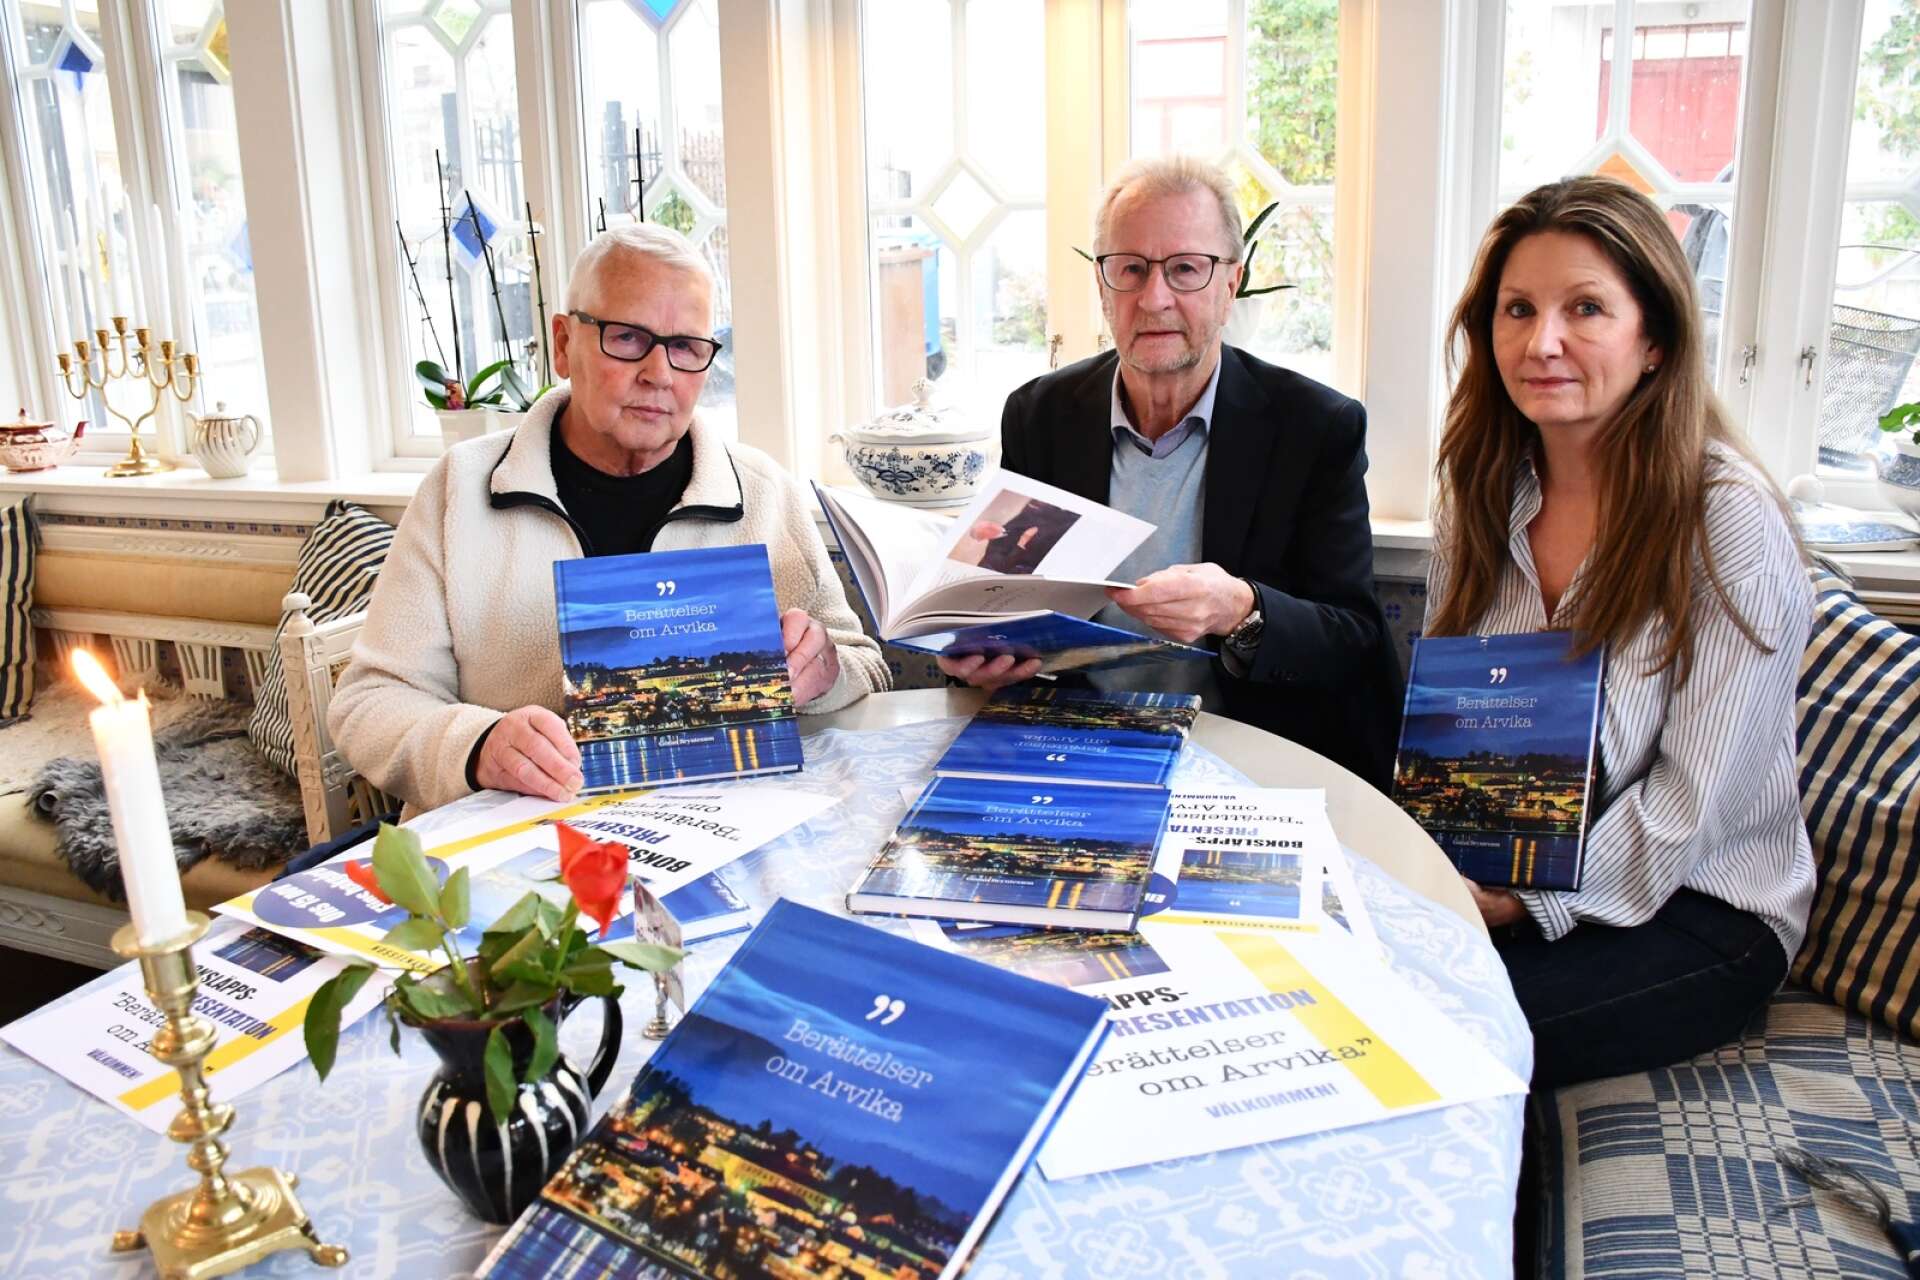 Vid boksläppet hade Göran Bryntesson med sig fotografen Tage Bäck och grafikern Carina Moberg.